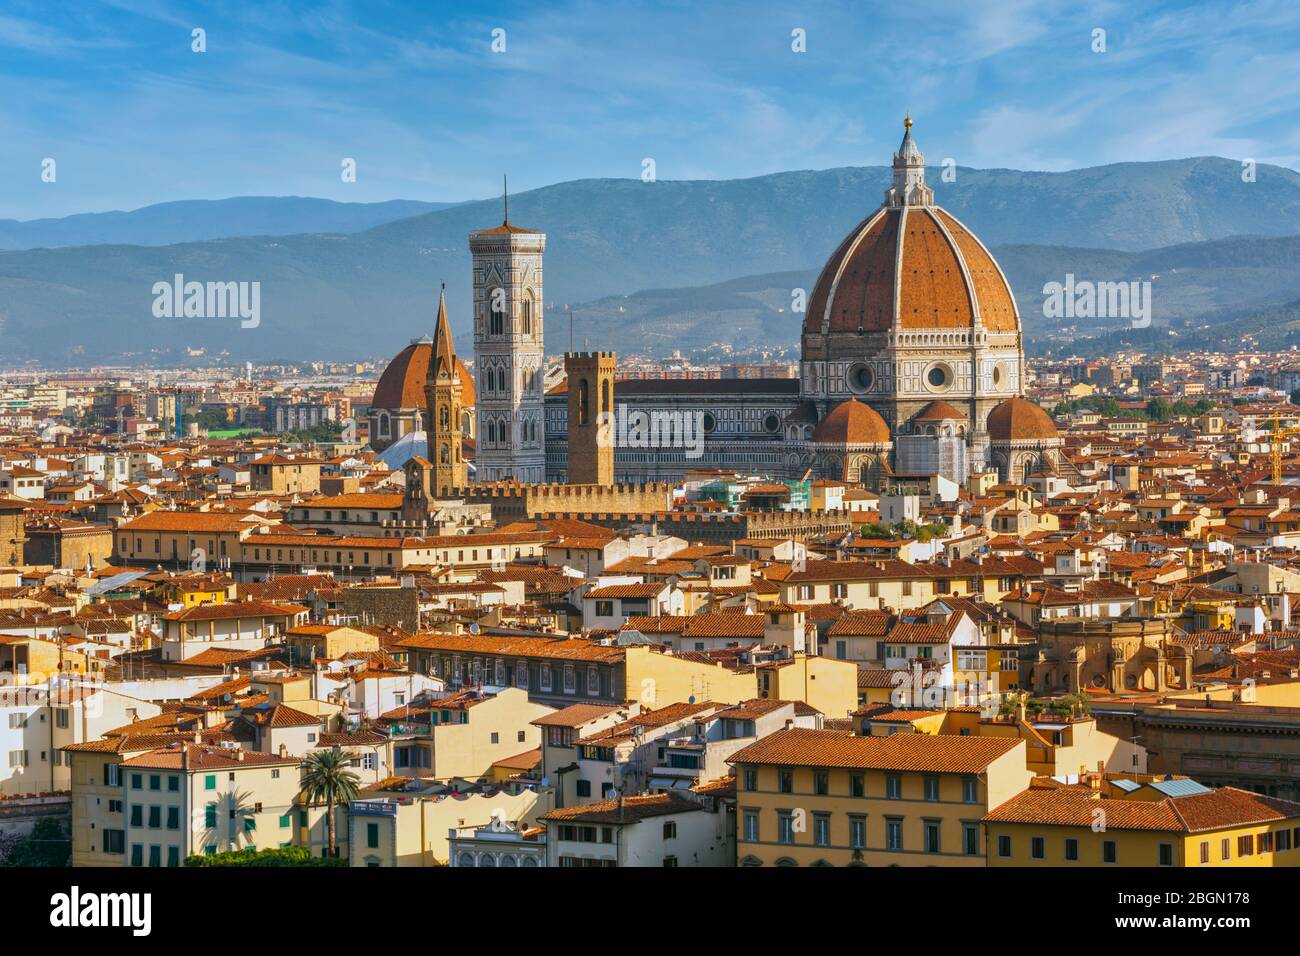 Gesamtblick auf den Dom oder die Kathedrale. Florenz, Toskana, Italien. Das historische Zentrum von Florenz ist ein UNESCO-Weltkulturerbe Stockfoto